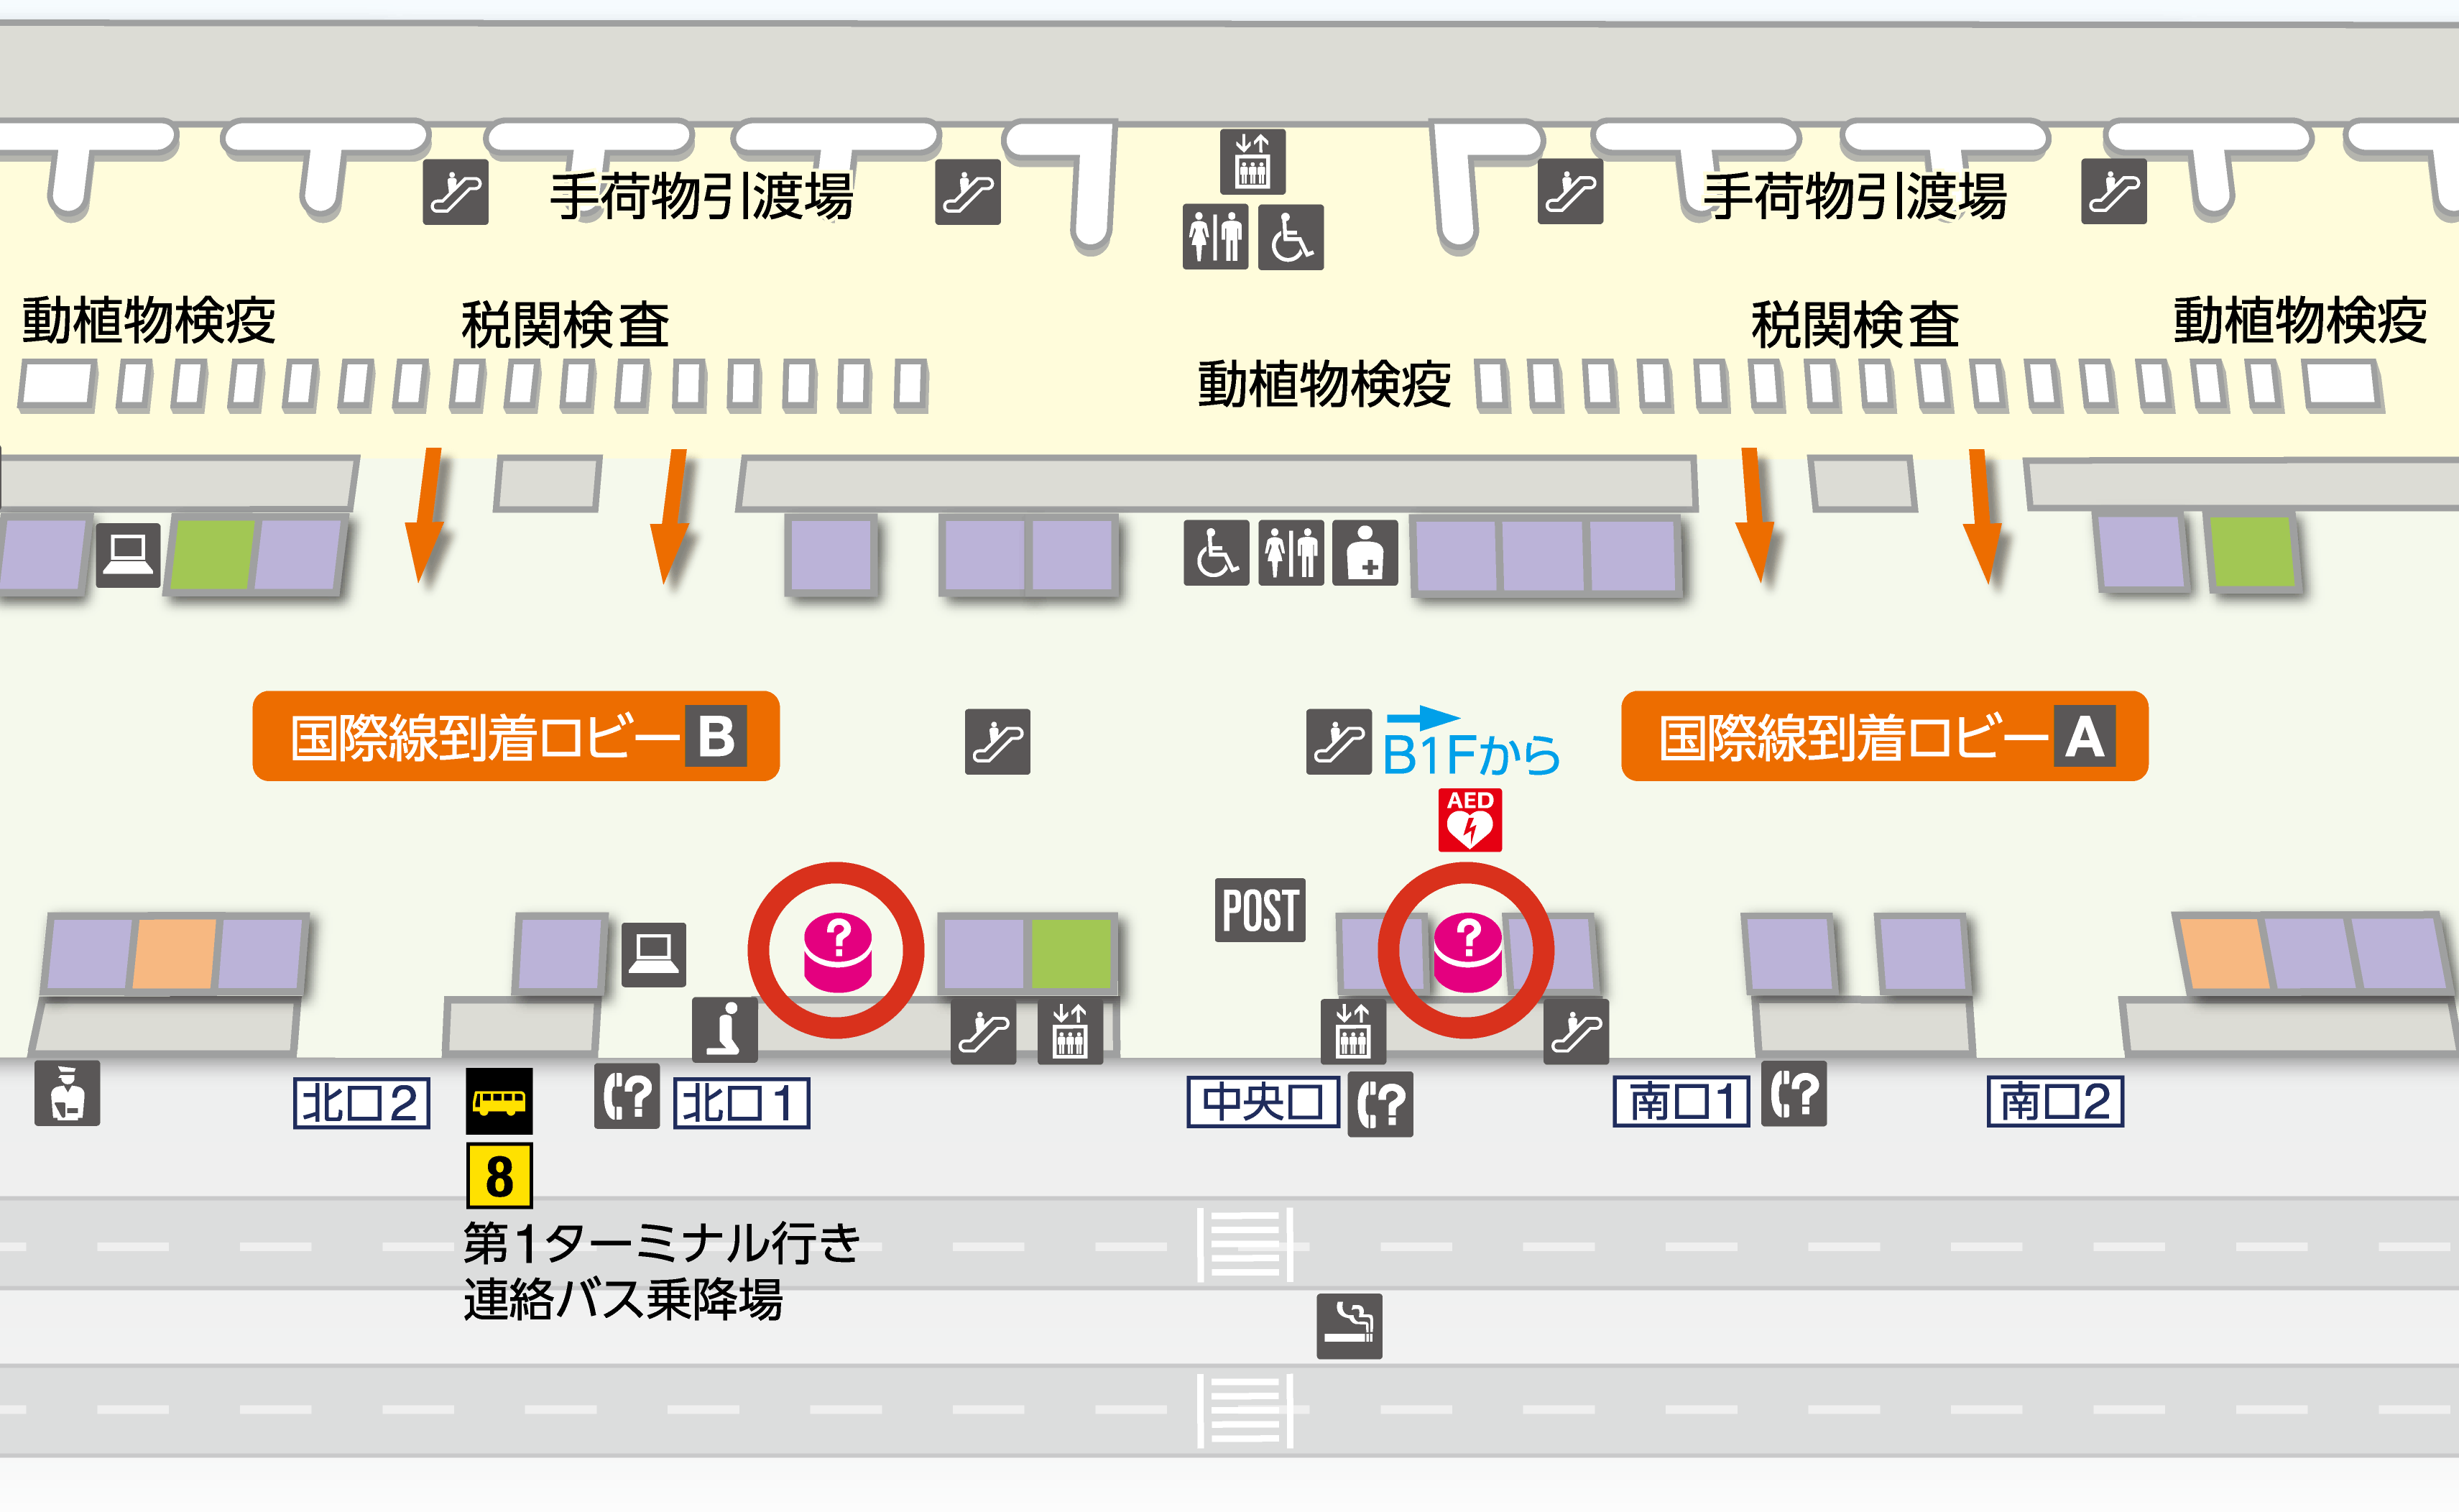 第2ターミナル1F（国際線到着ロビー）フロアマップの図